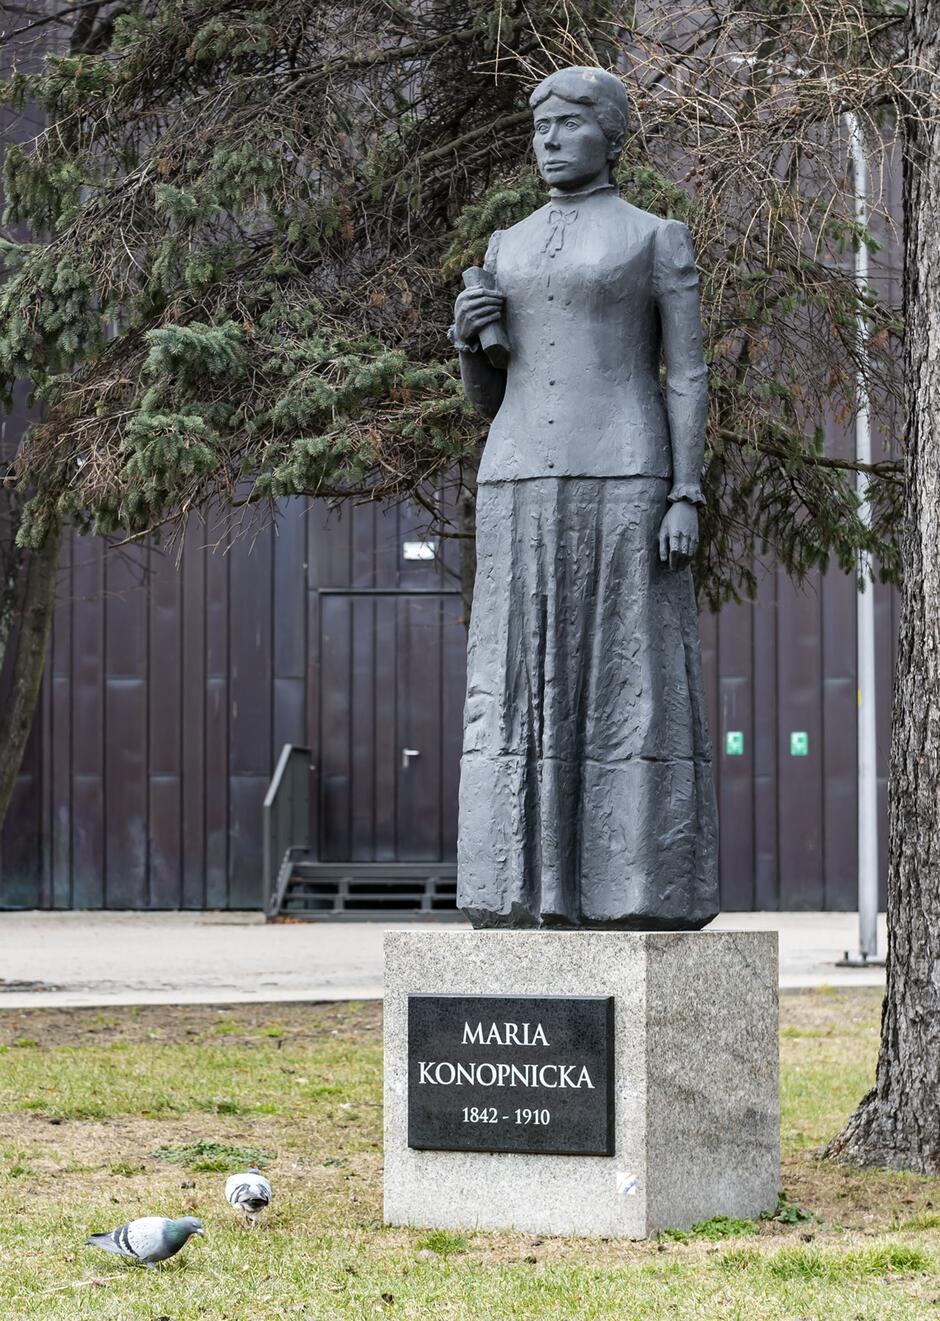 Zdjęcie przedstawia pomnik Marii Konopnickiej, słynnej polskiej pisarki i poetki, znajdujący się na tle drzew. Pomnik wykonany jest z ciemnego materiału i stoi na kamiennym postumencie z inskrypcją MARIA KONOPNICKA 1842-1910 .